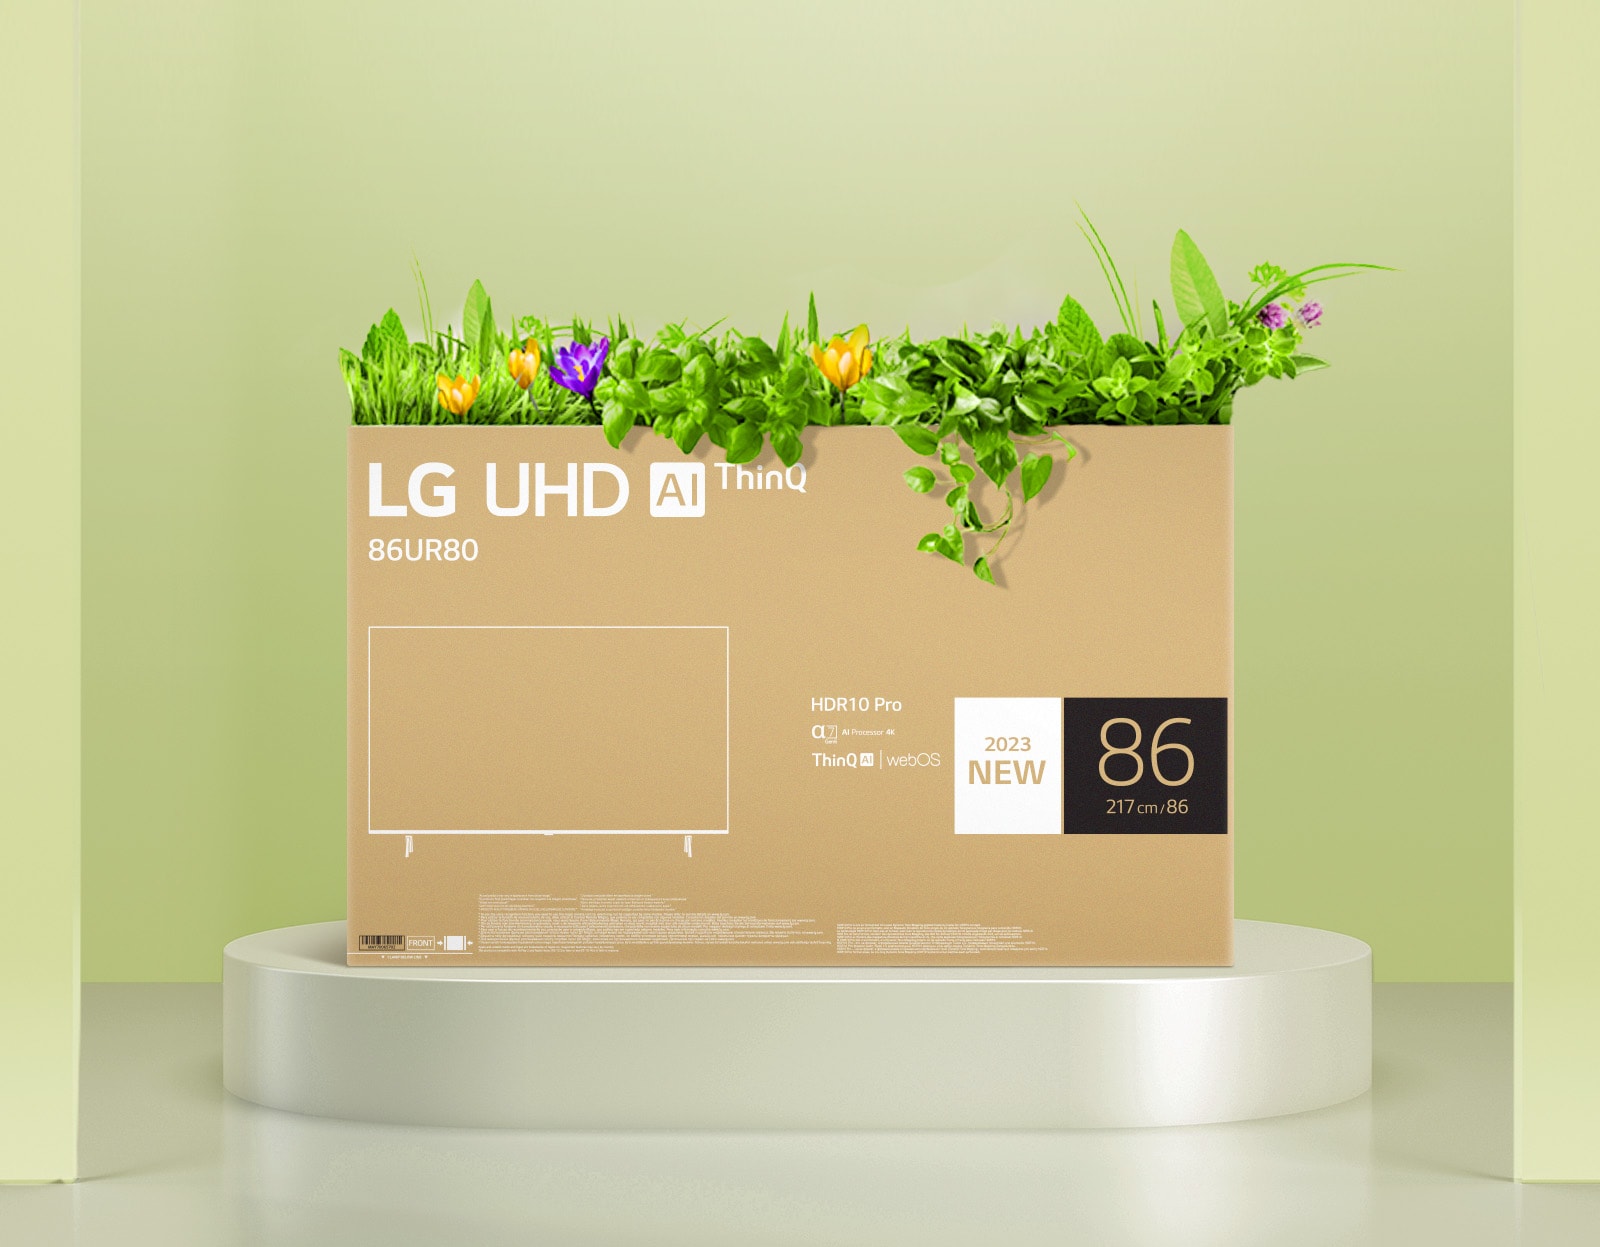 Ящик для цветов, изготовленный из переработанной упаковки UHD-телевизора LG.